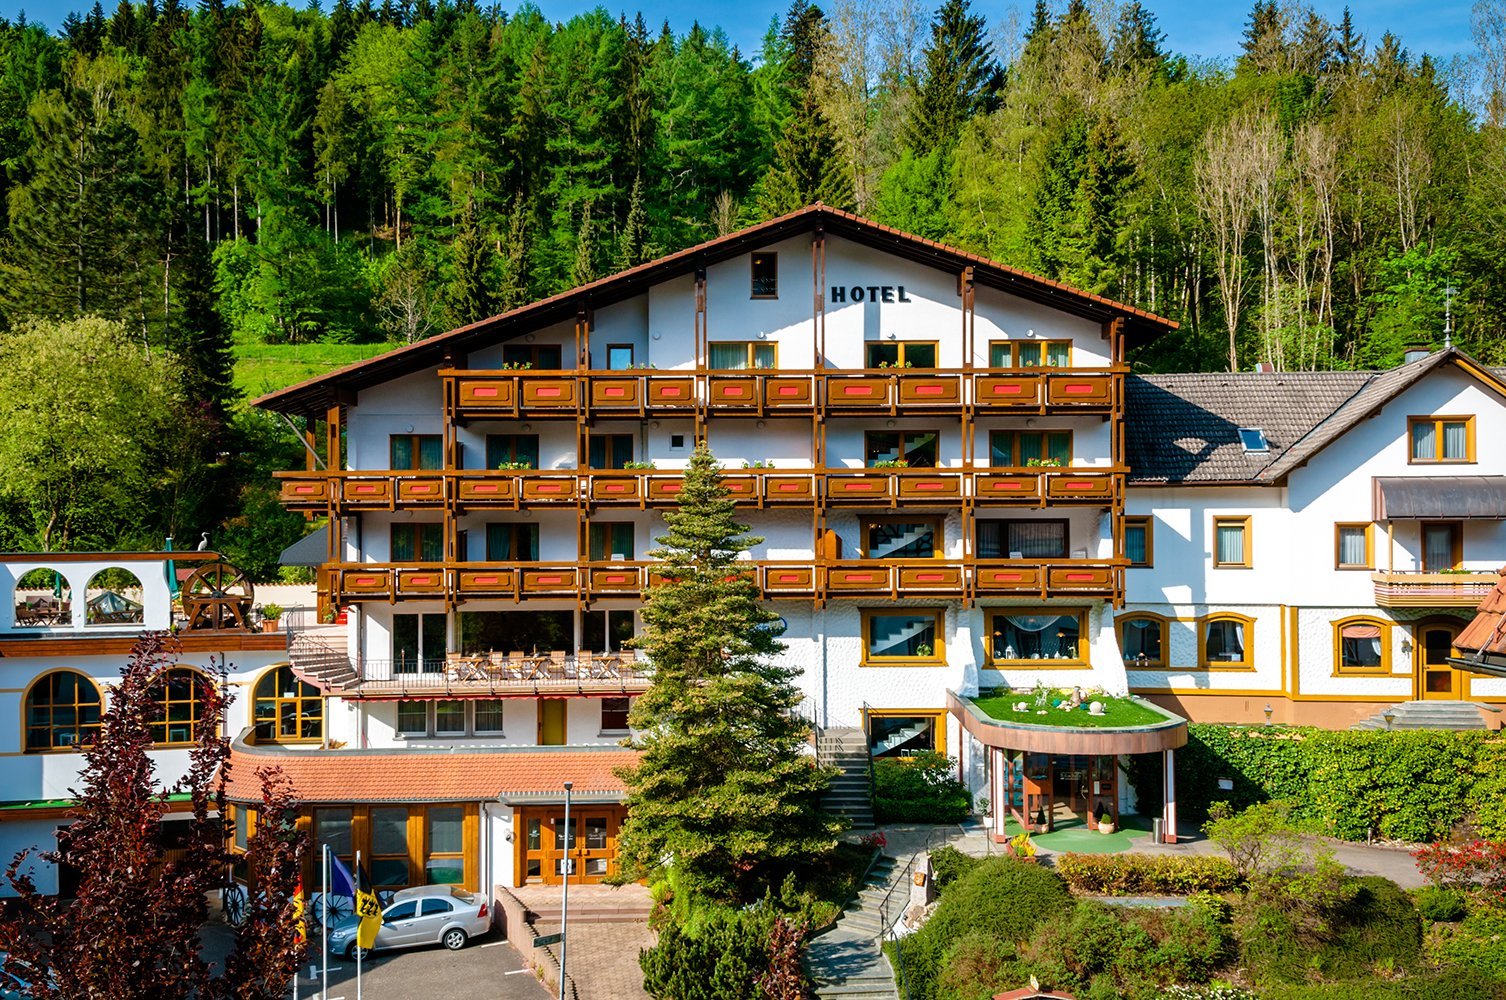 Solo-Alltagsrast® in Holzschuhs Schwarzwaldhotel (2 Nächte) – Holzschuhs Schwarzwaldhotel (4 Sterne) in Baiersbronn, Baden-Württemberg inkl. Halbpension